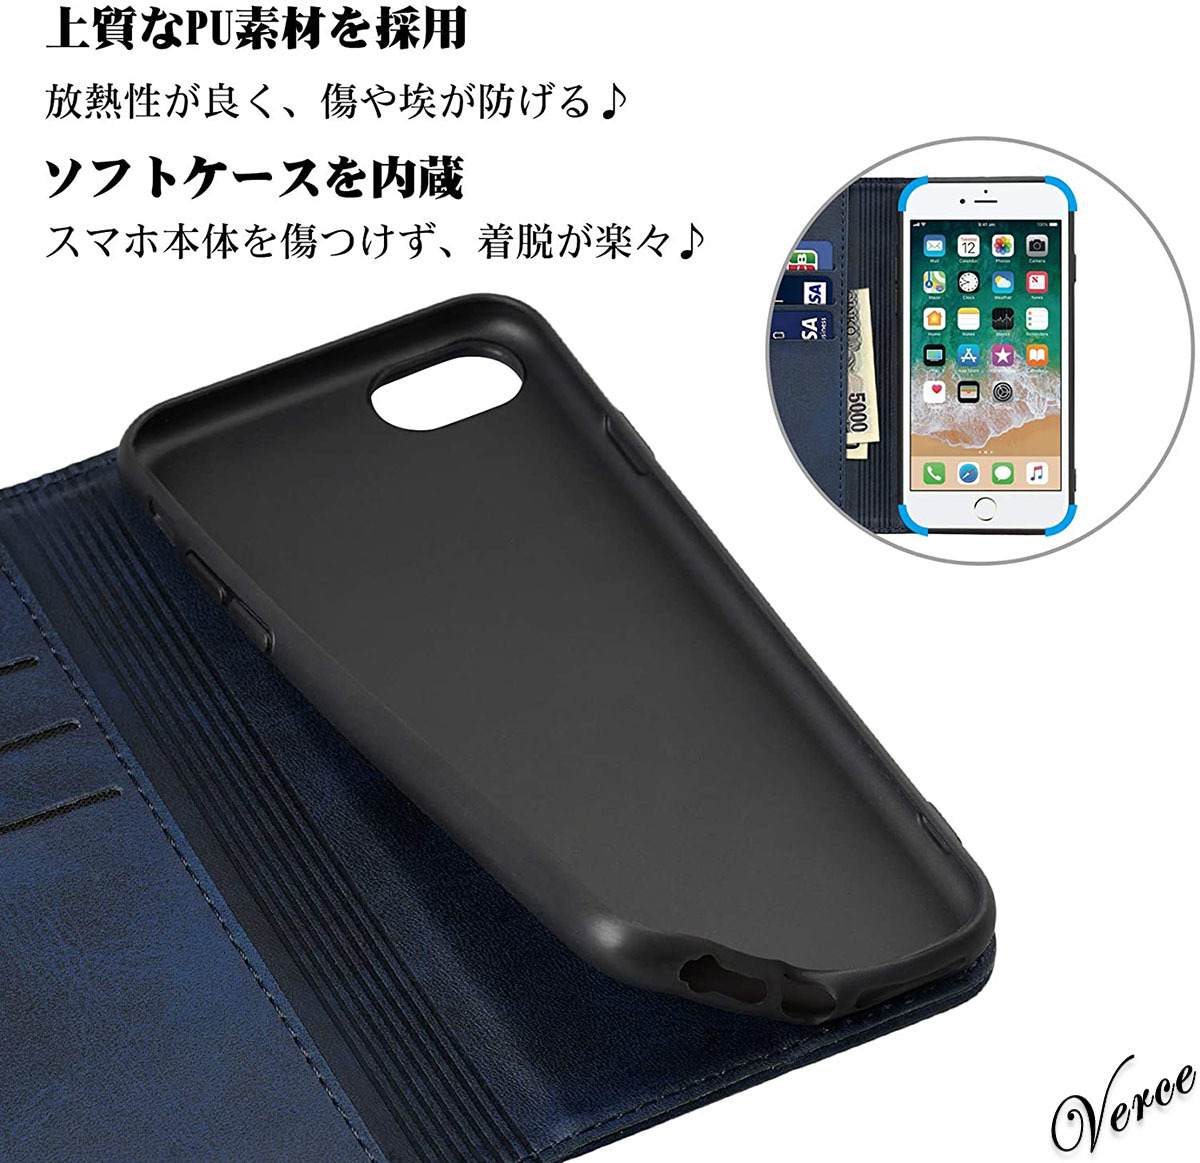 ◆滑らかな質感◆ ダークブルー 手帳型ケース iPhone SE / iPhone7 / 8 スタンド機能 カバー 内蔵マグネット グリップ感抜群 PUレザー